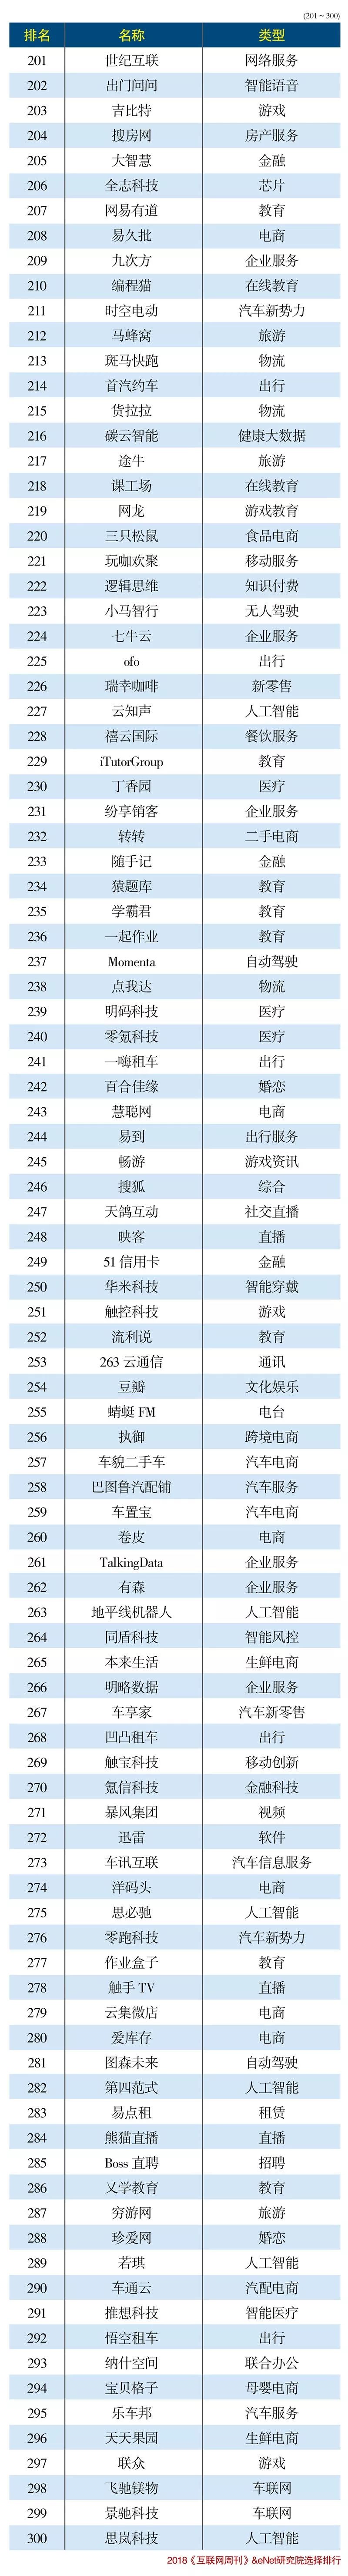 2018年中国互联网300强排行榜